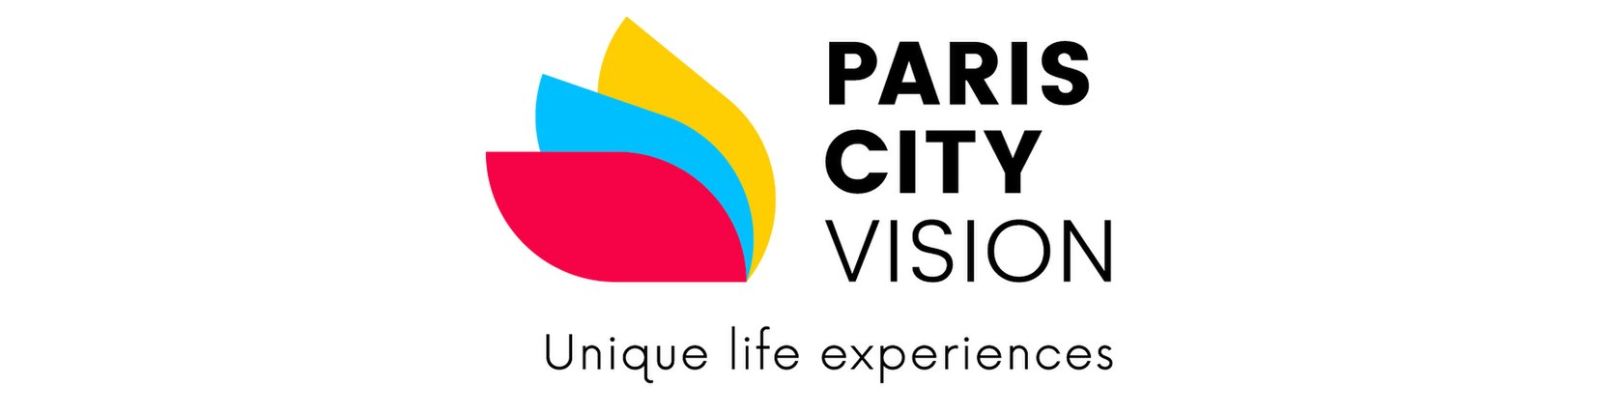 WhatsApp Paris City Vision: Conheça os canais de atendimento!